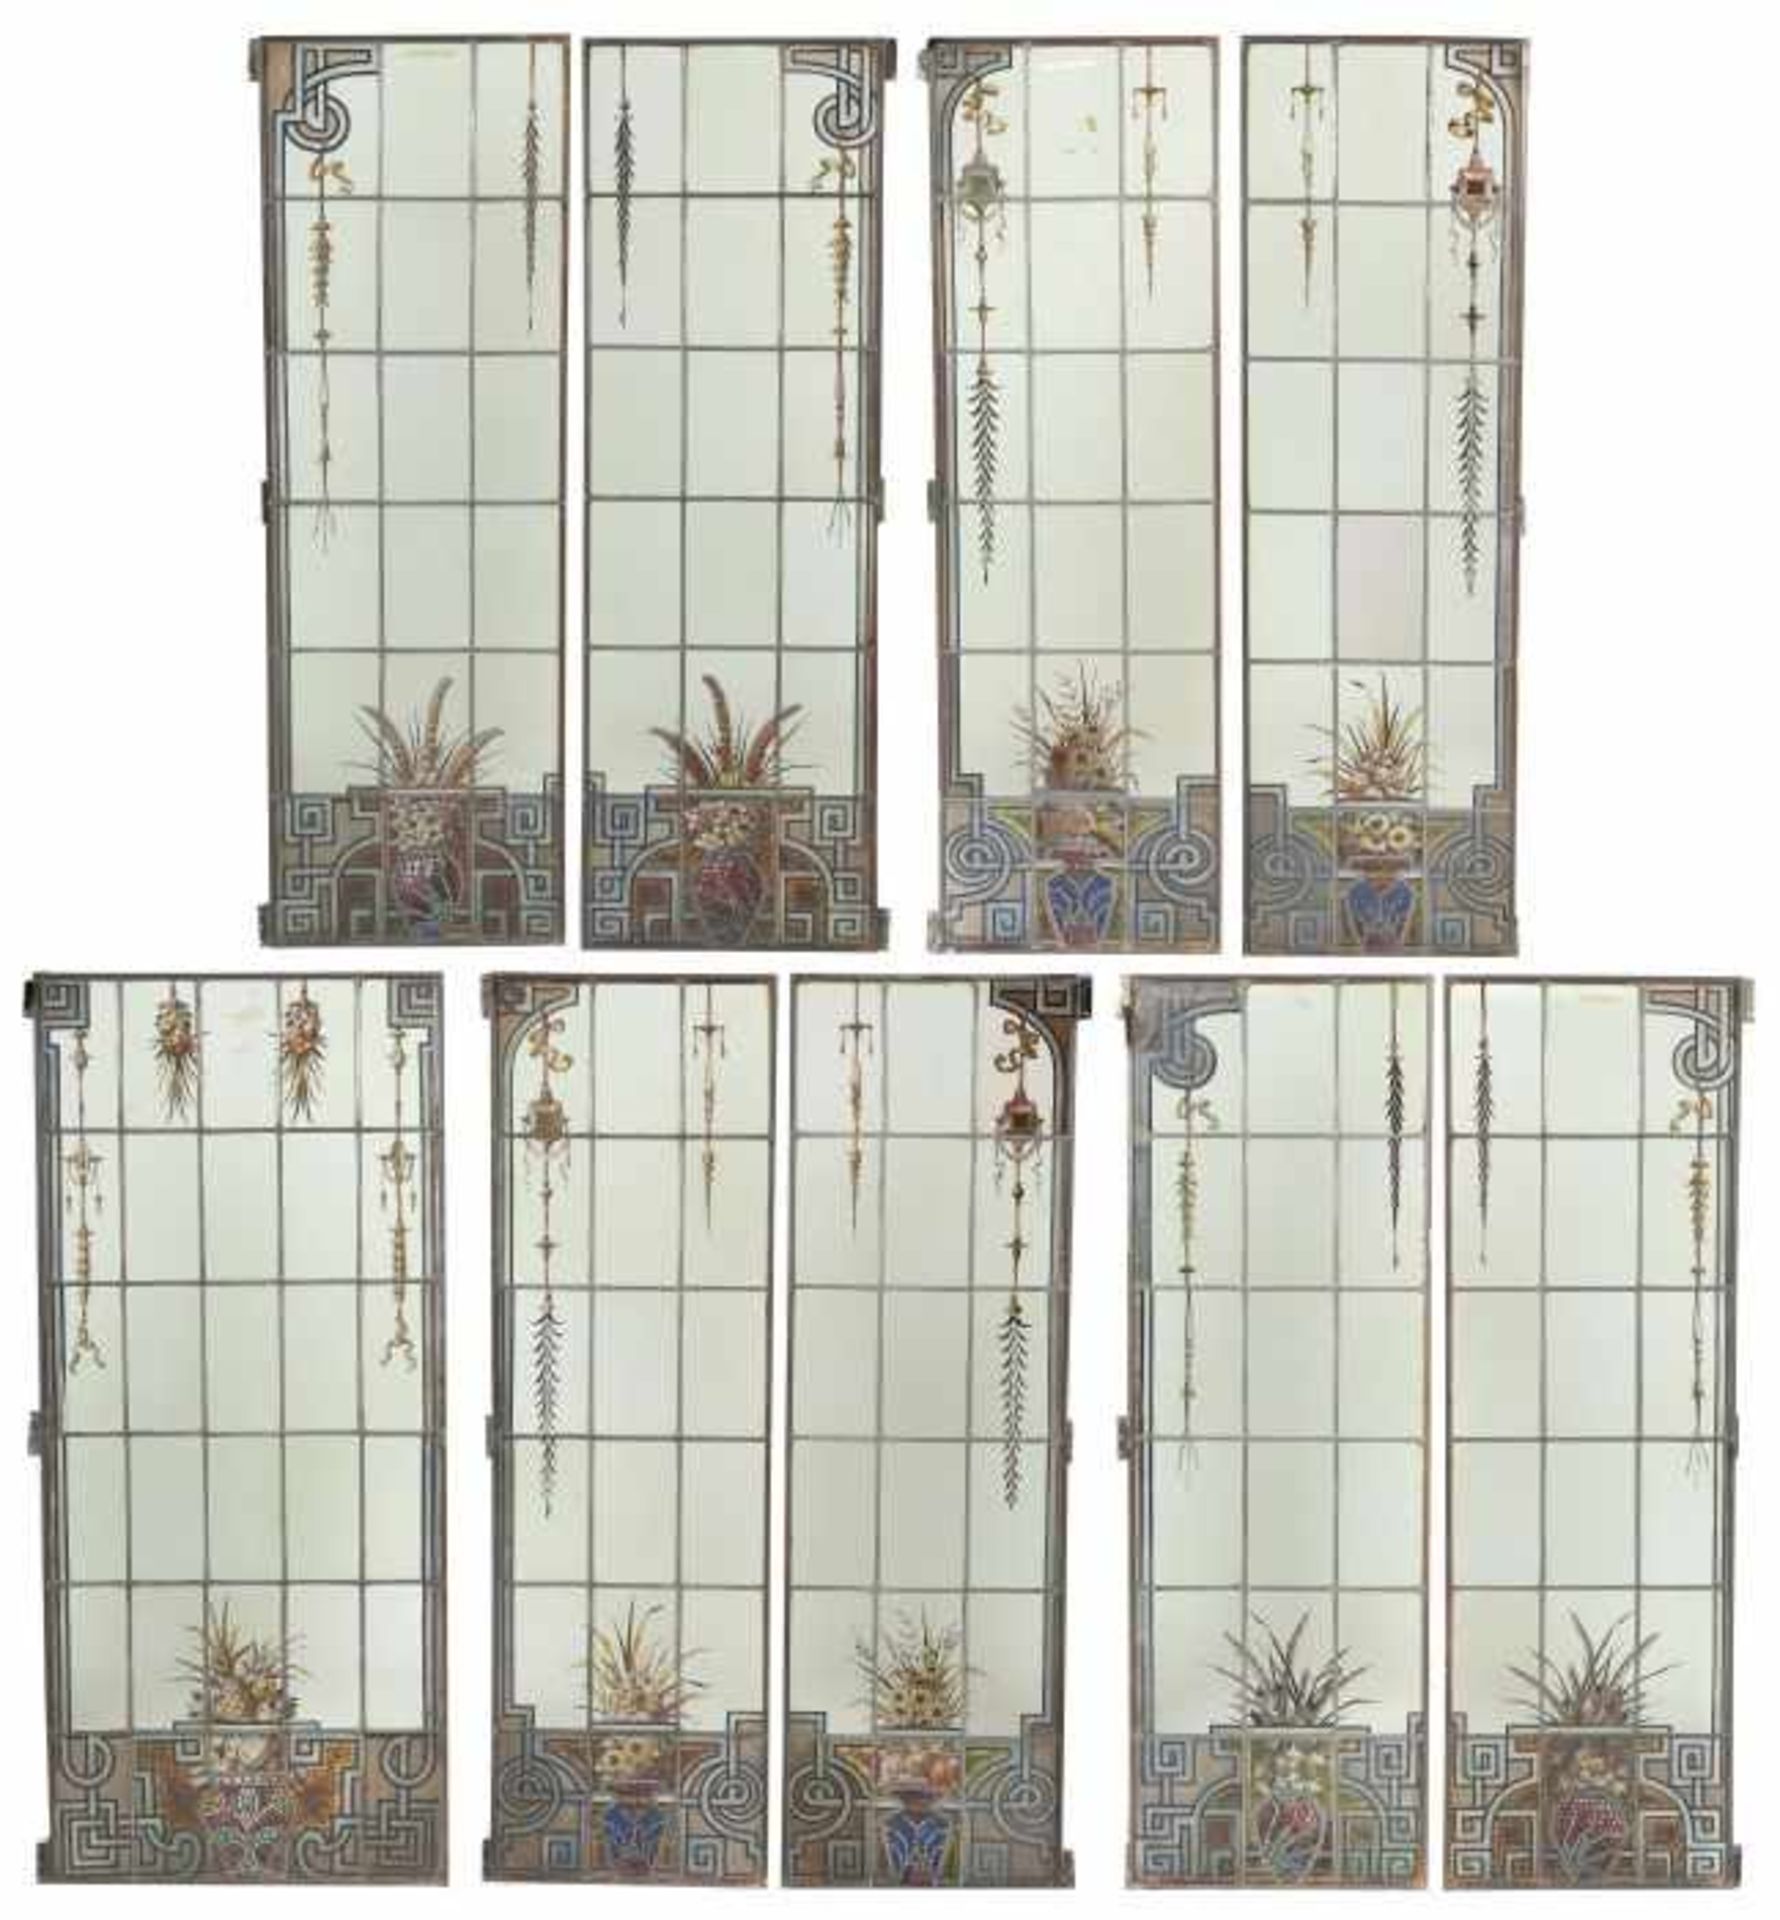 9 Bleiglasfensterwohl Frankreich, grünliches Glas, tlw. mit Schmelzfarben bemalt, 9 verschieden